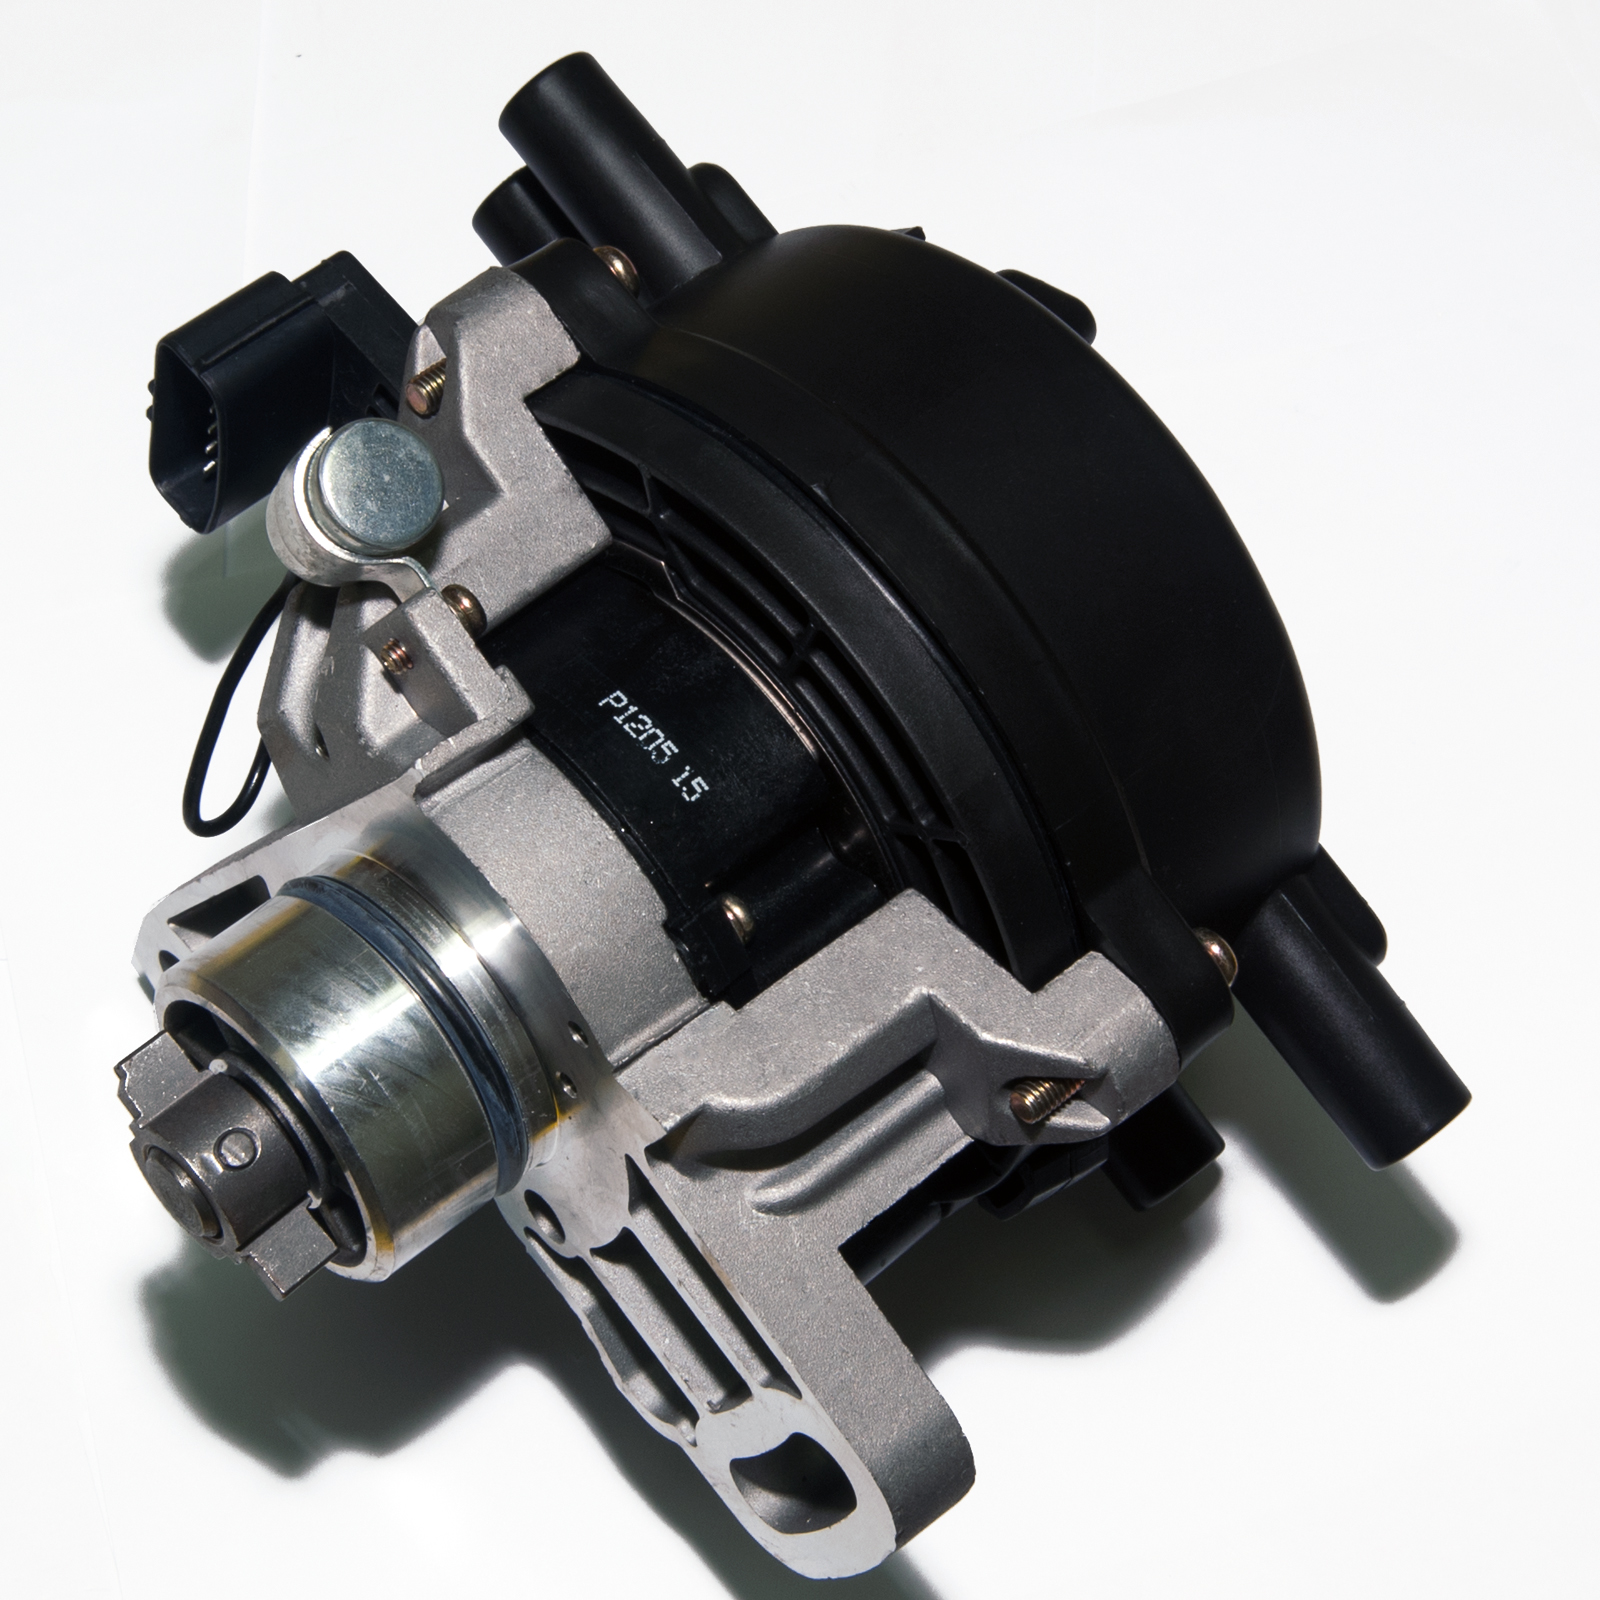 New Ignition Distributor for Mazda 626 MX-6 Ford Probe 2.5L MX-3 1.8L V6